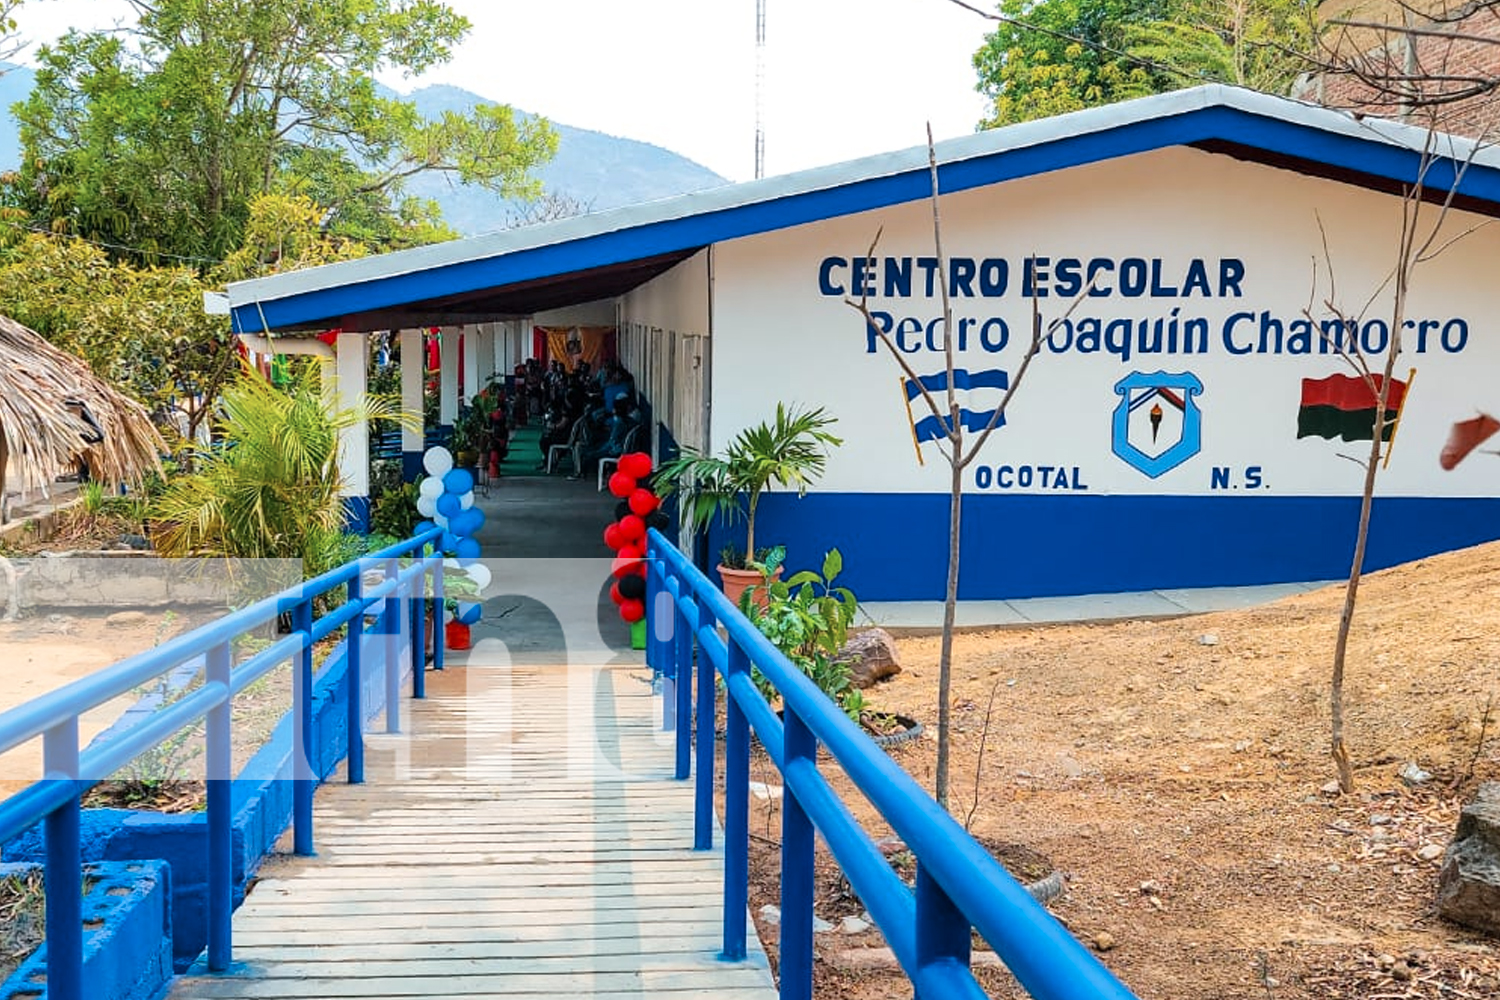 Foto: ¡Qué alegría! La escuela Pedro Joaquín Chamorro en Ocotal, Nueva Segovia, luce más bonita/TN8